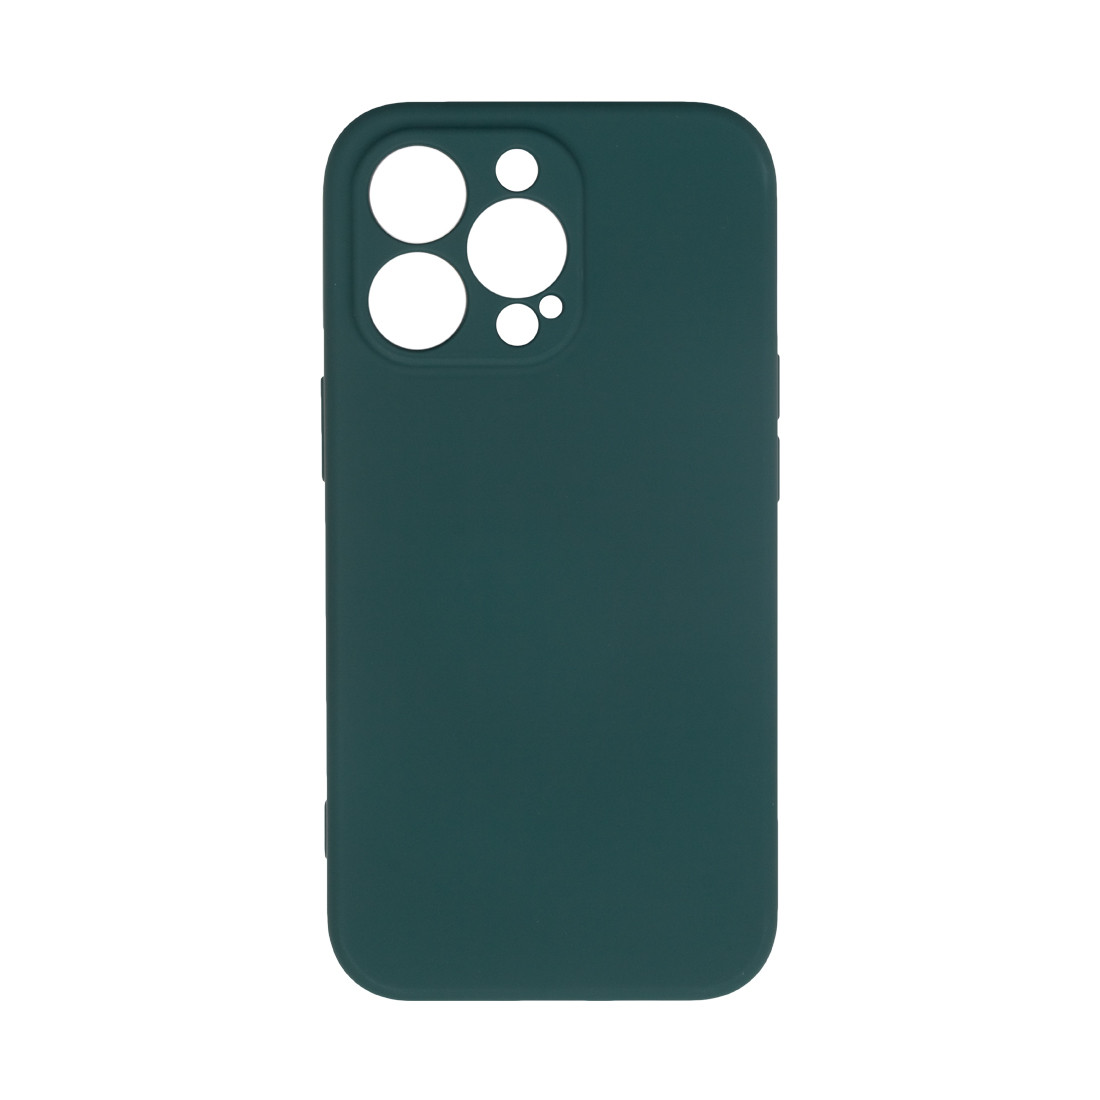 Чехол для телефона  X-Game  XG-HS76  для Iphone 13 Pro  Силиконовый  Тёмно-зелёный  Пол. пакет